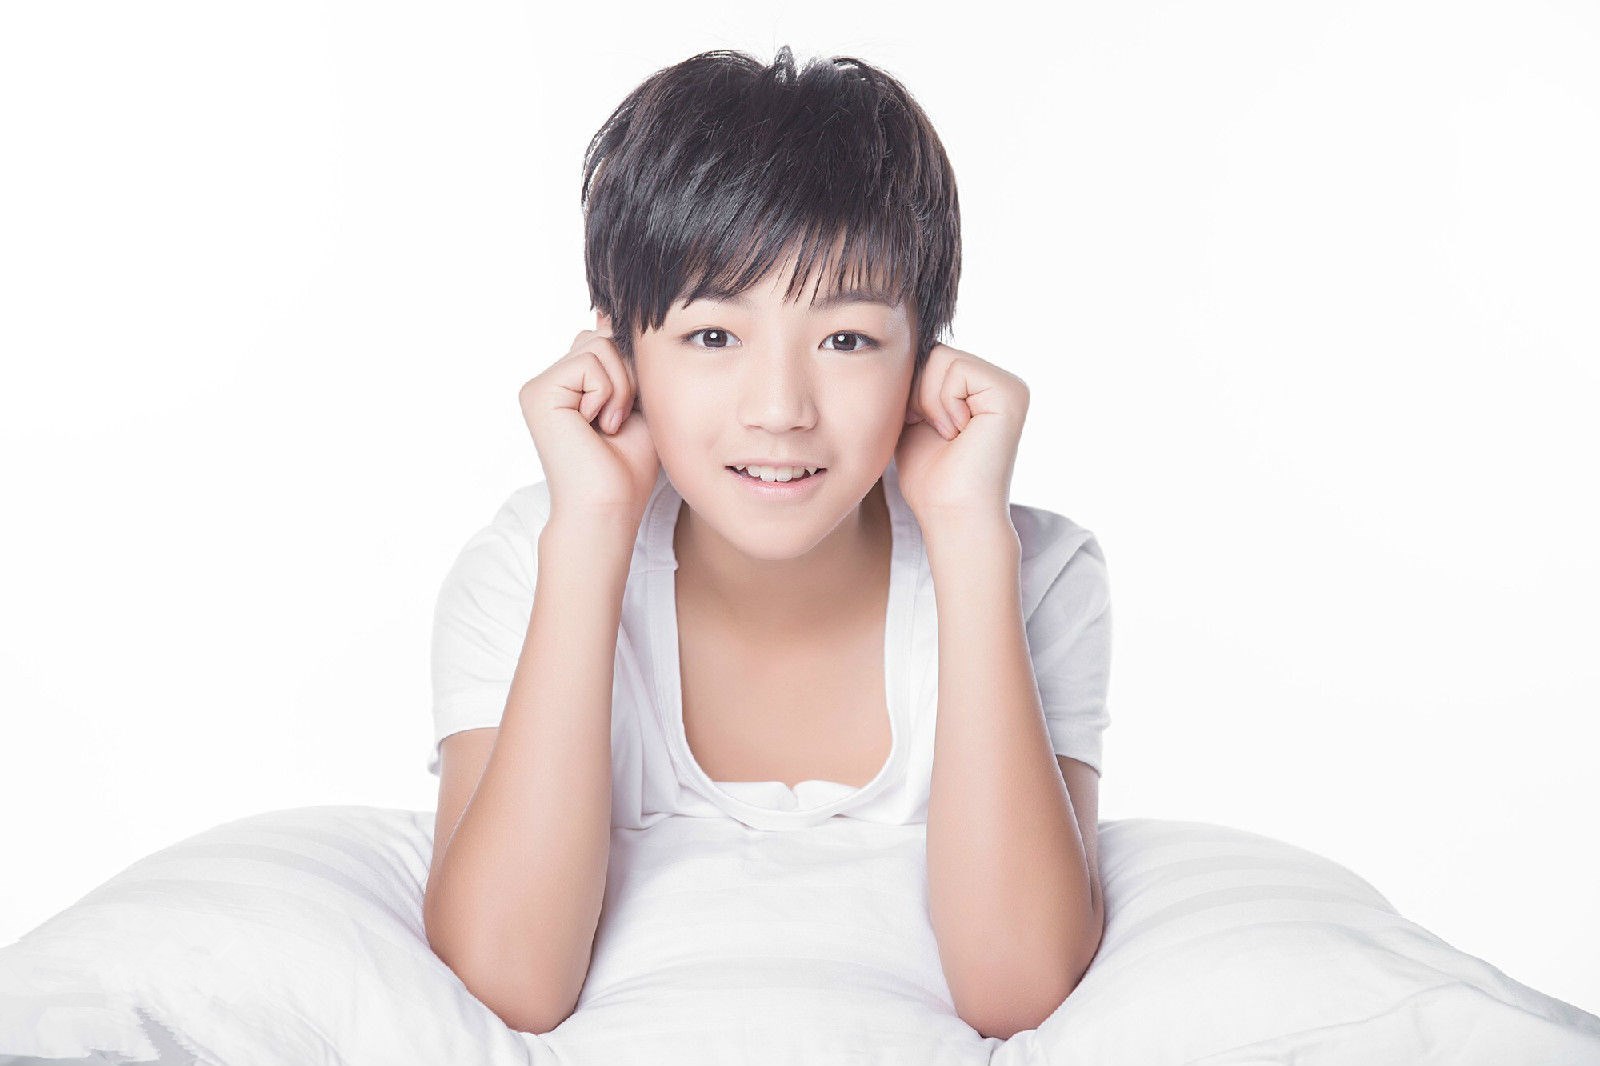 王俊凯11岁照片图片